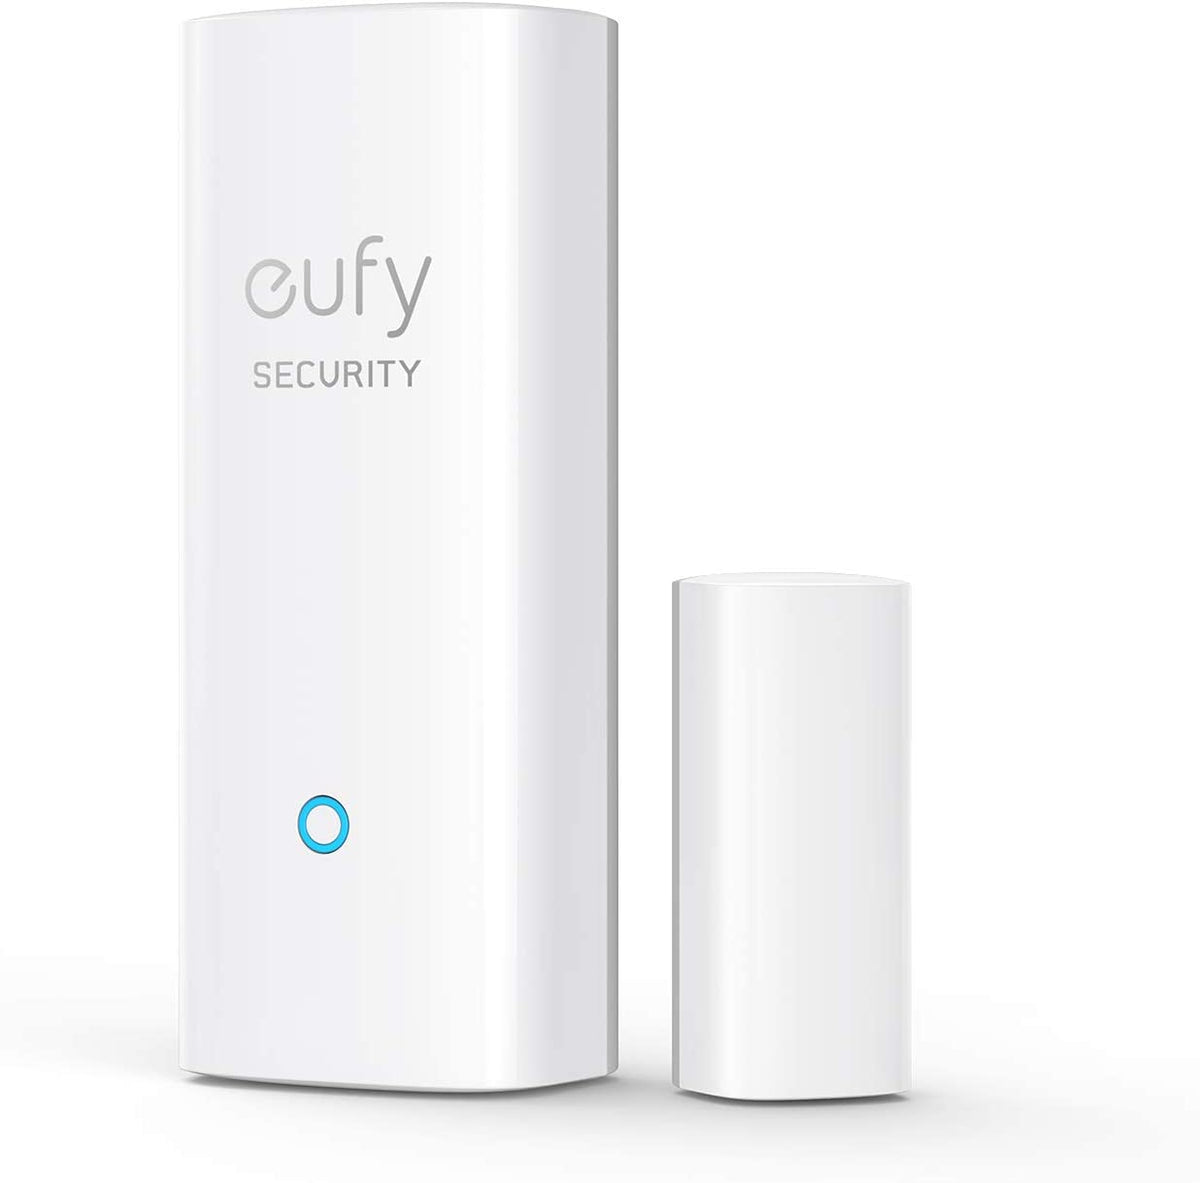 eufy Security Entry Sensor